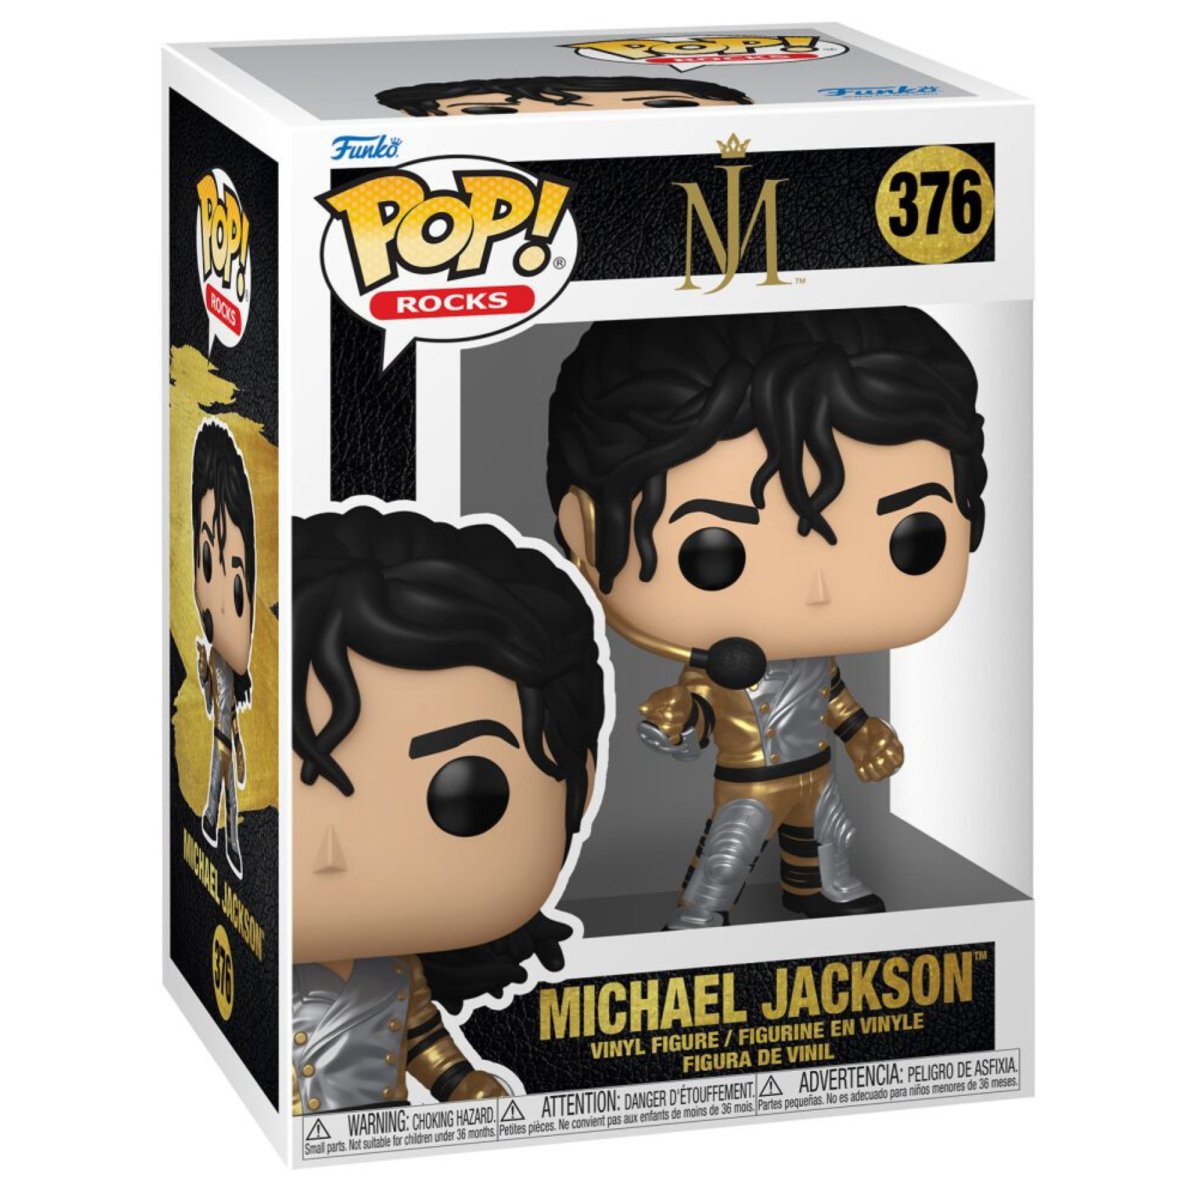 Michael Jackson - Michael Jackson [Armor] #376 - Funko Pop! Vinyl Rocks - Persona Toys